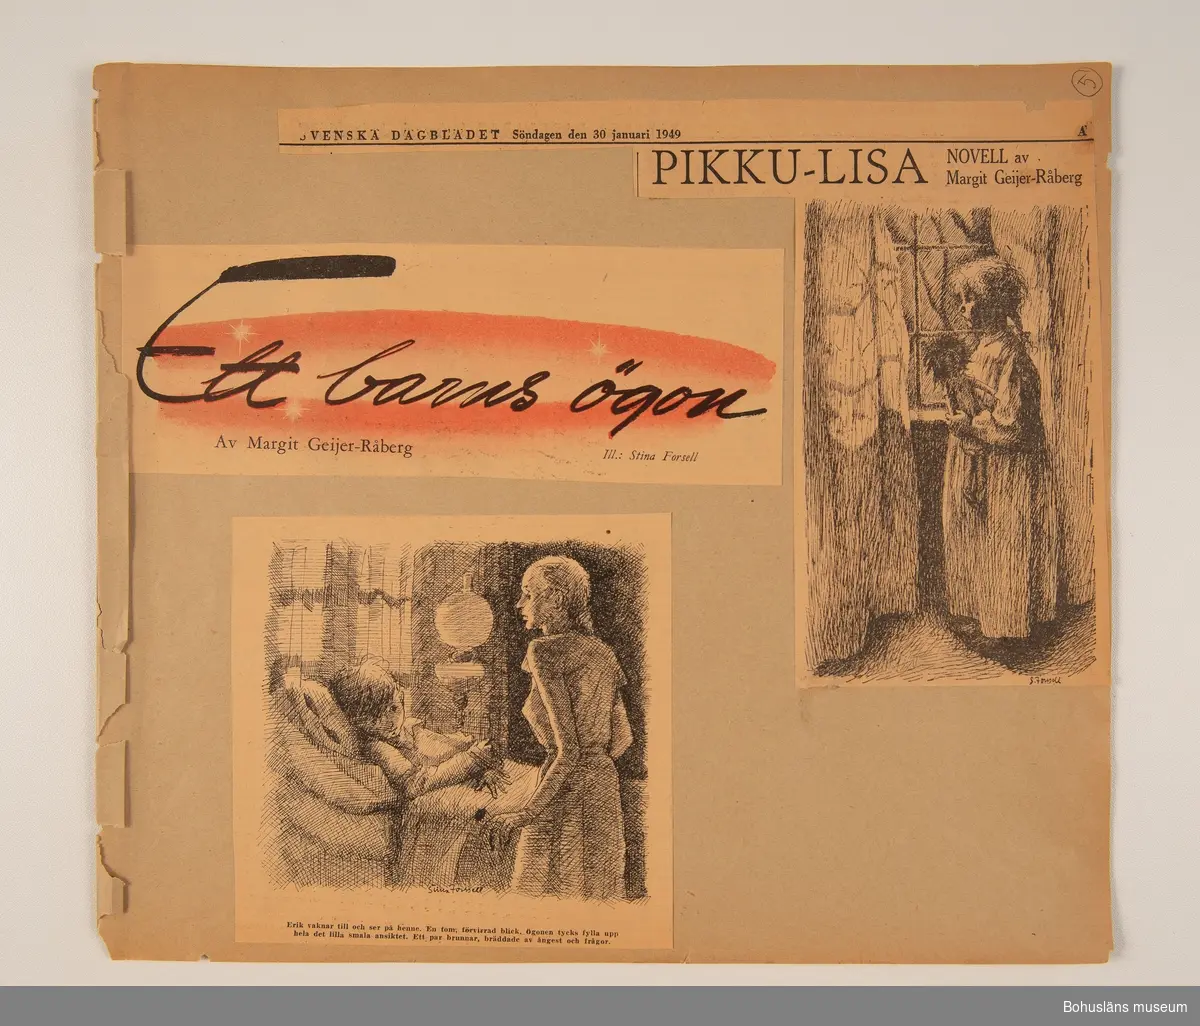 Urklippet ingår i den oinbundna klippbok Stina Forssell efterlämnade. På papperarken sitter klistrade urklipp ur tidningssidor där Stina Forssell illustrerat en dikt eller novell. Några av dessa teckningar finns som original i samlingen.